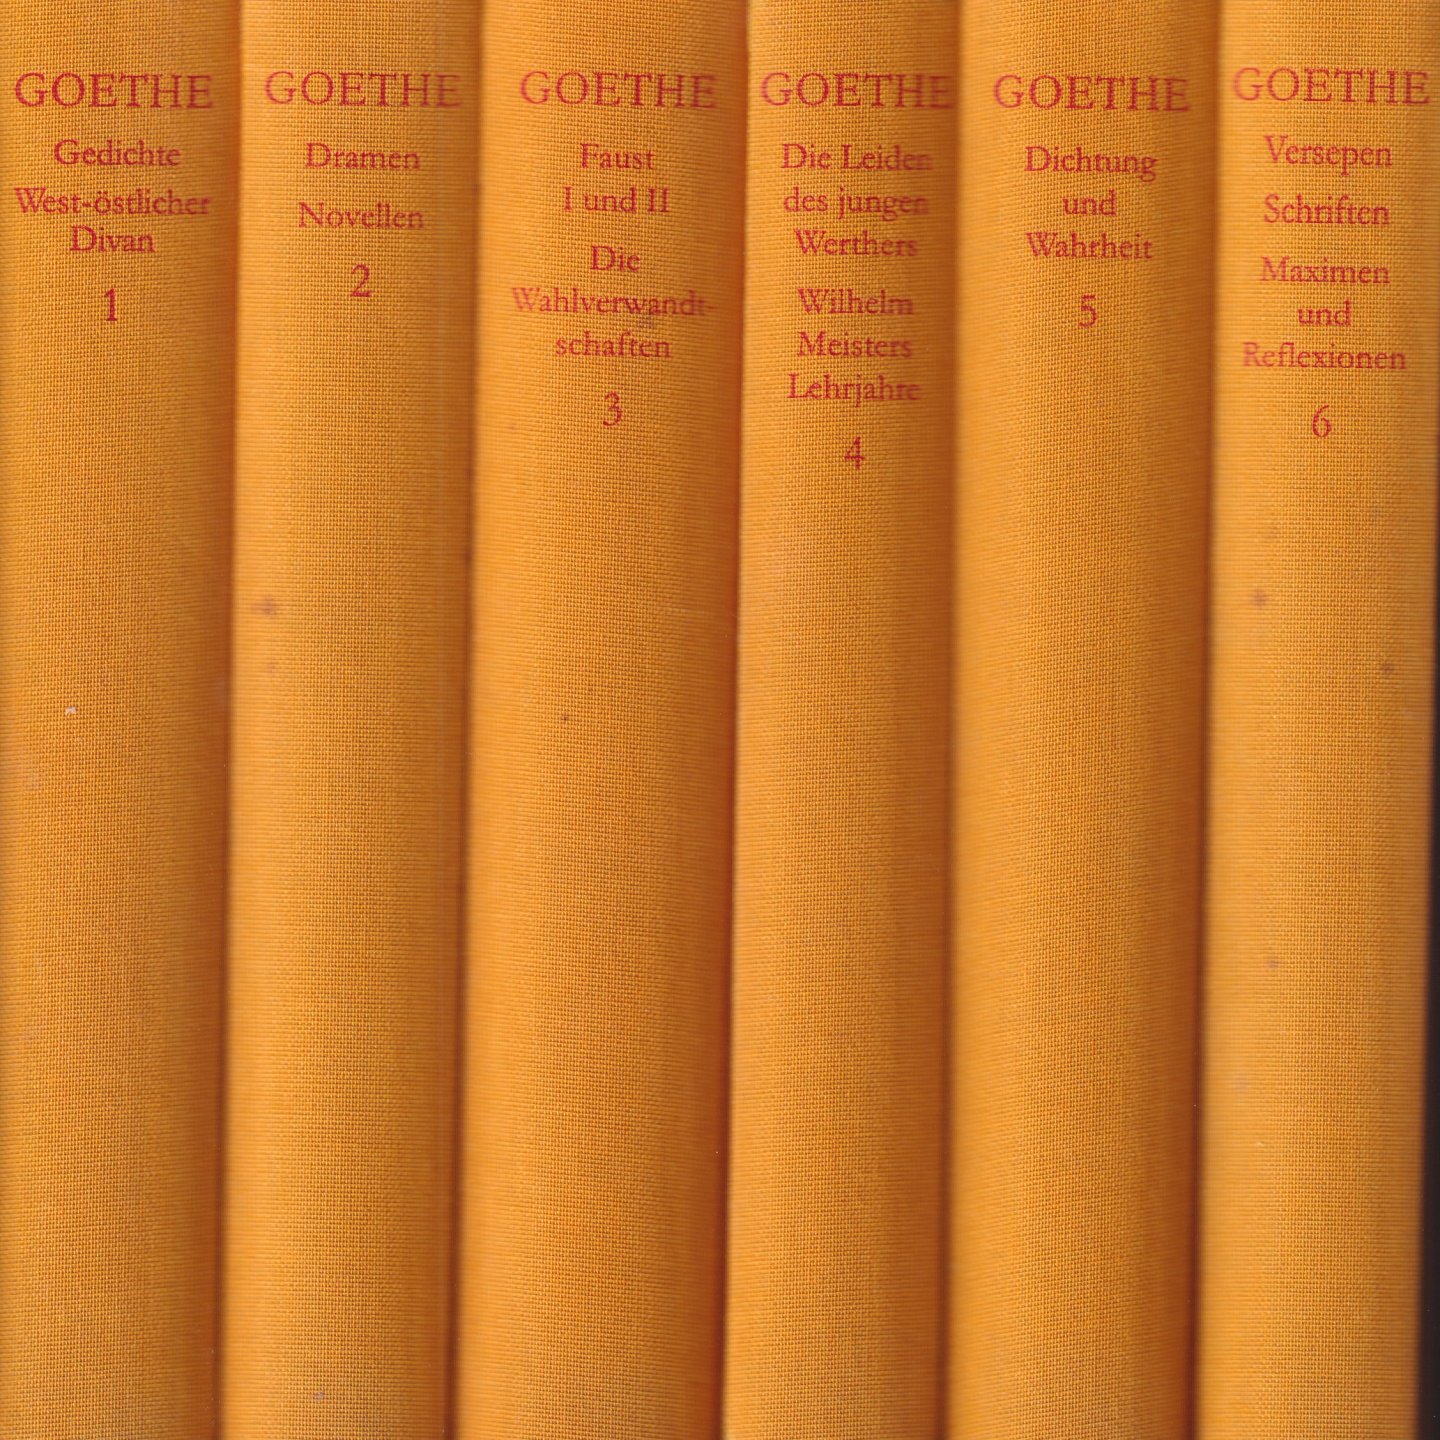 Goethe, Johann Wolfgang - Werke in sechs Bänden